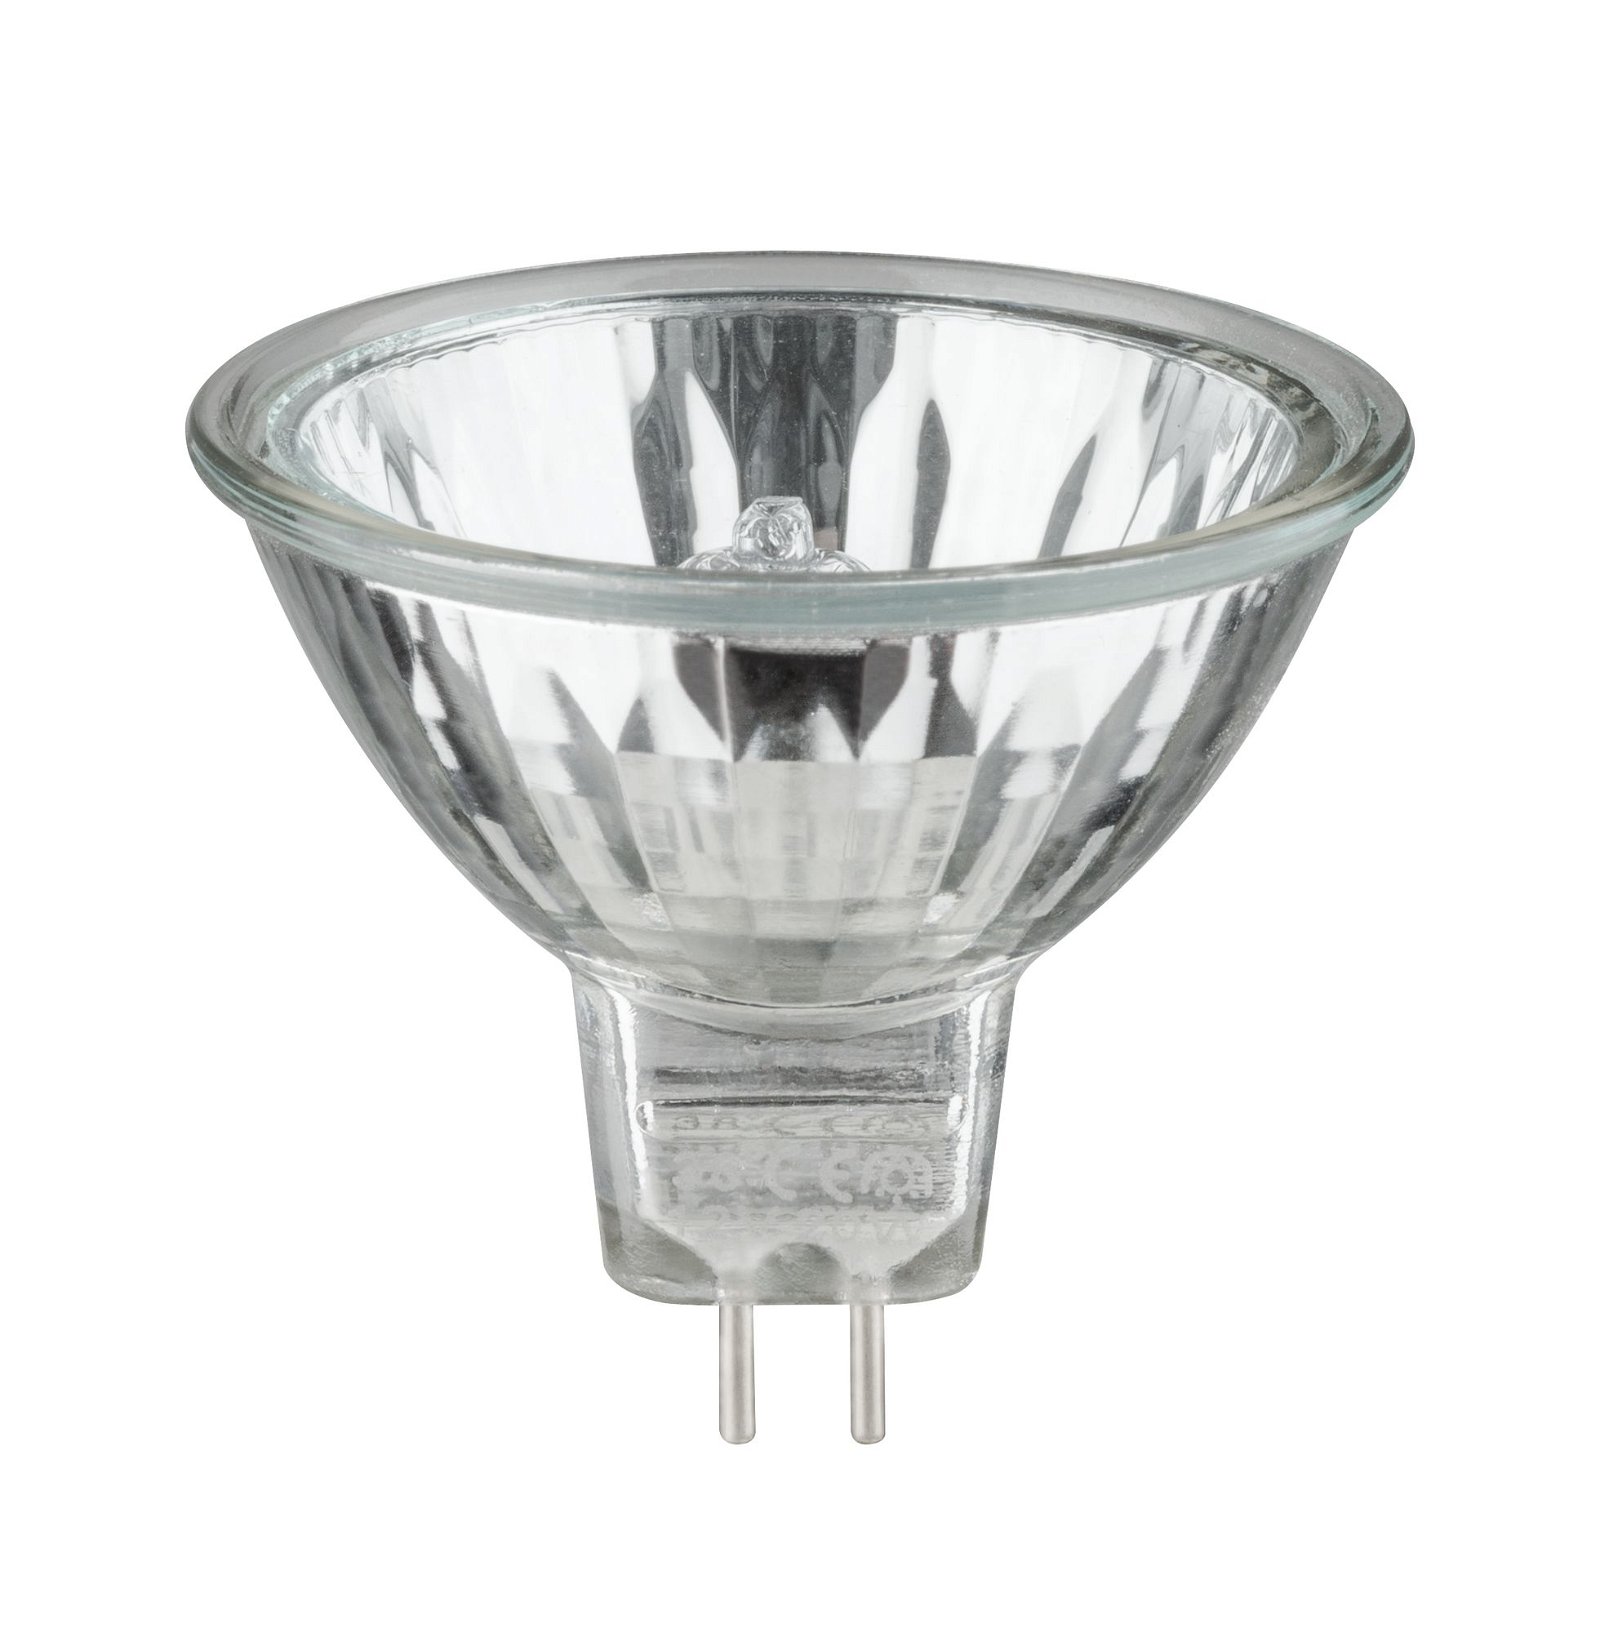 Low-voltage halogen reflector lamp, security 35 W GU5.3, silver 12 V